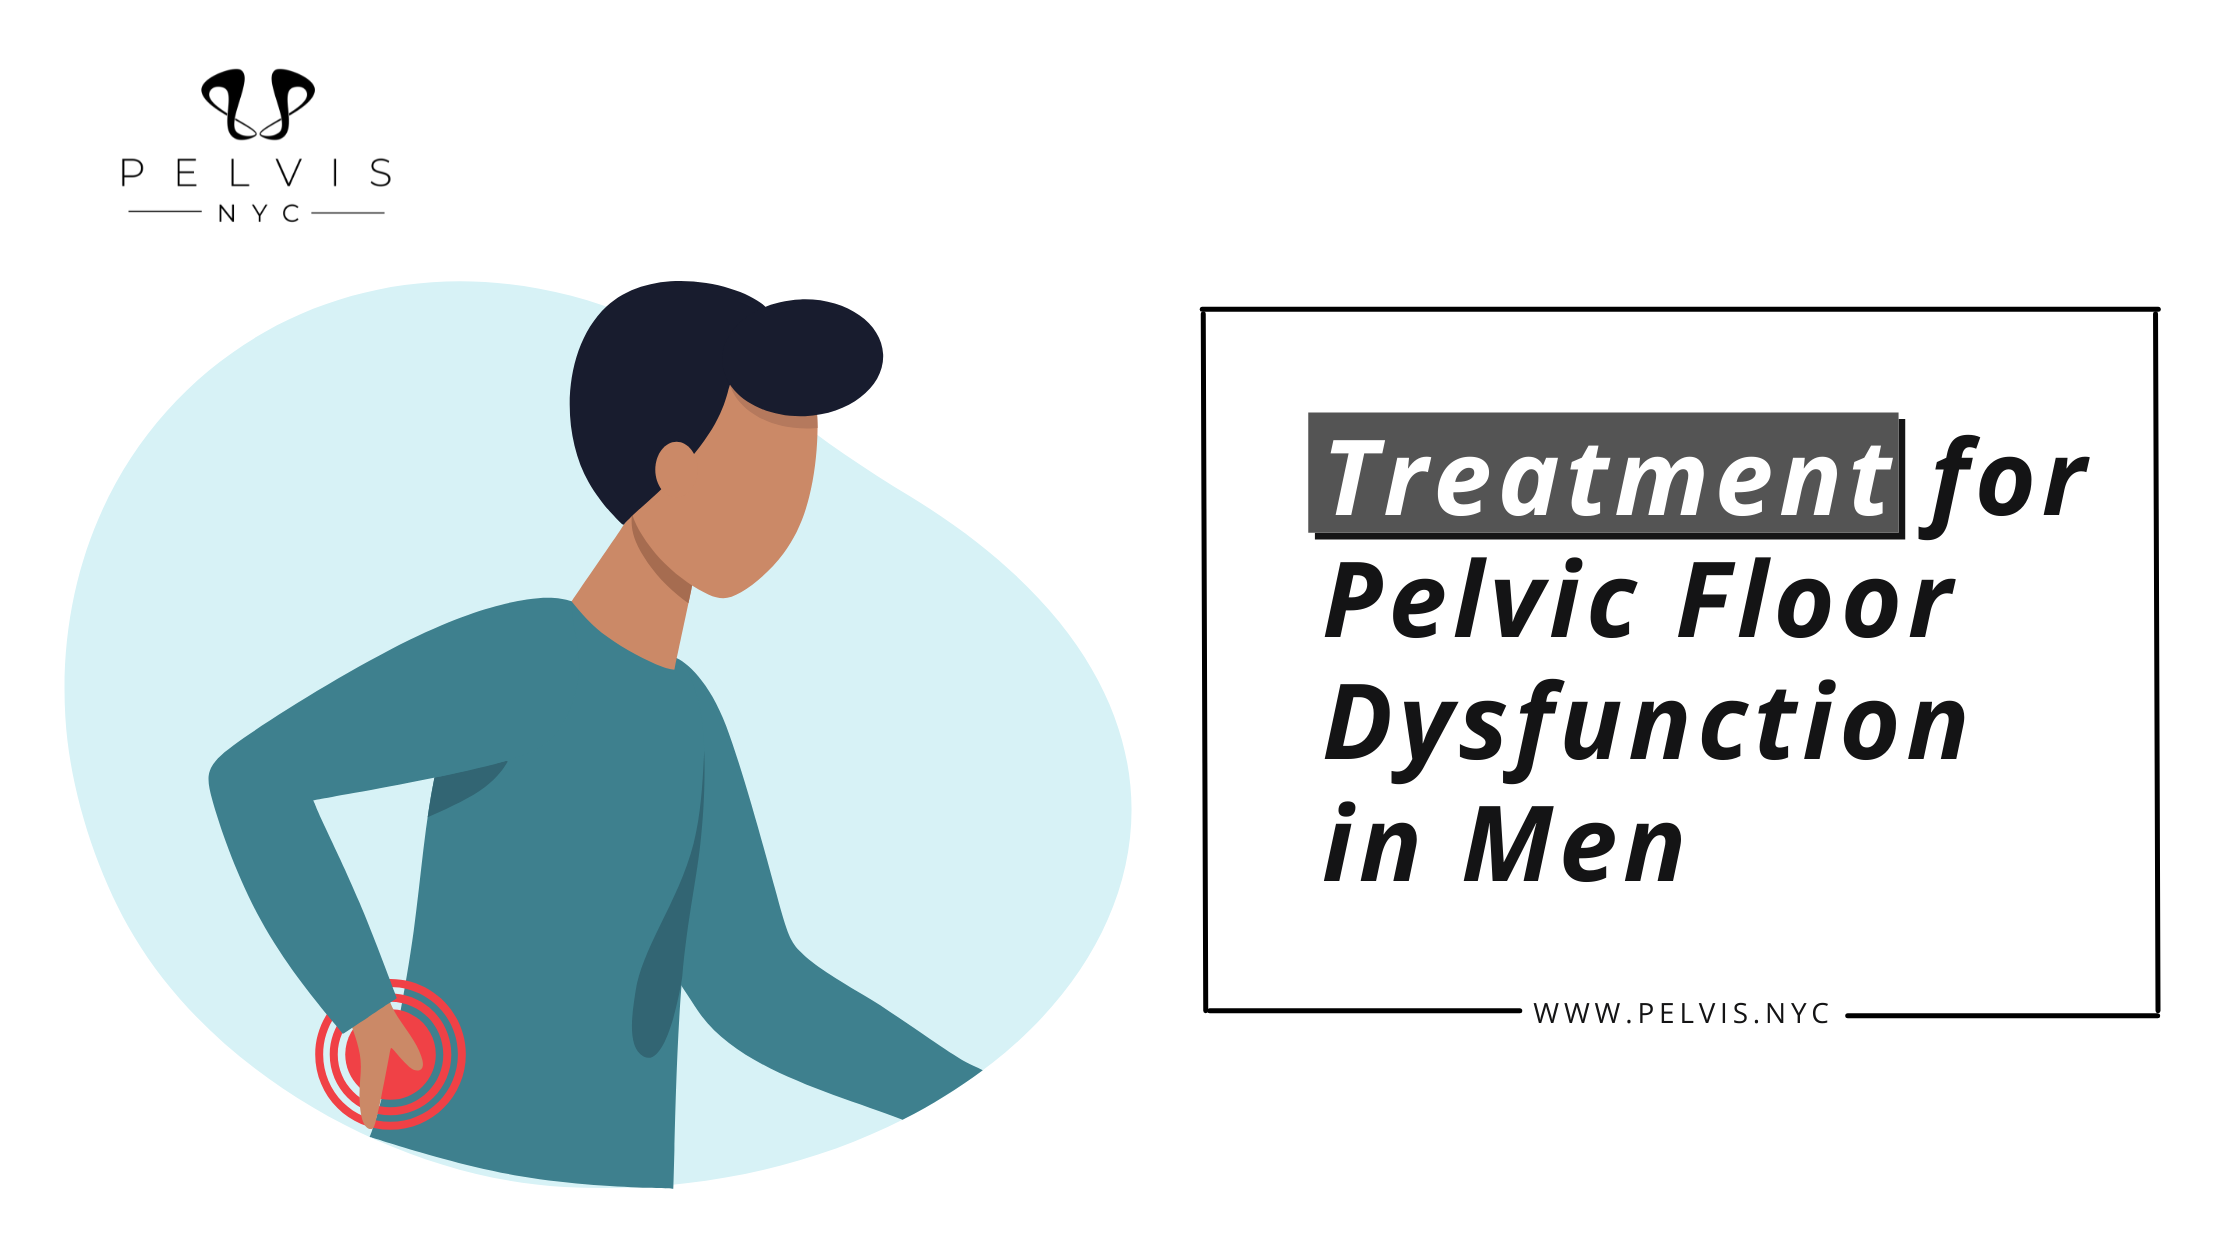 Treatment for Pelvic Floor Dysfunction in Men